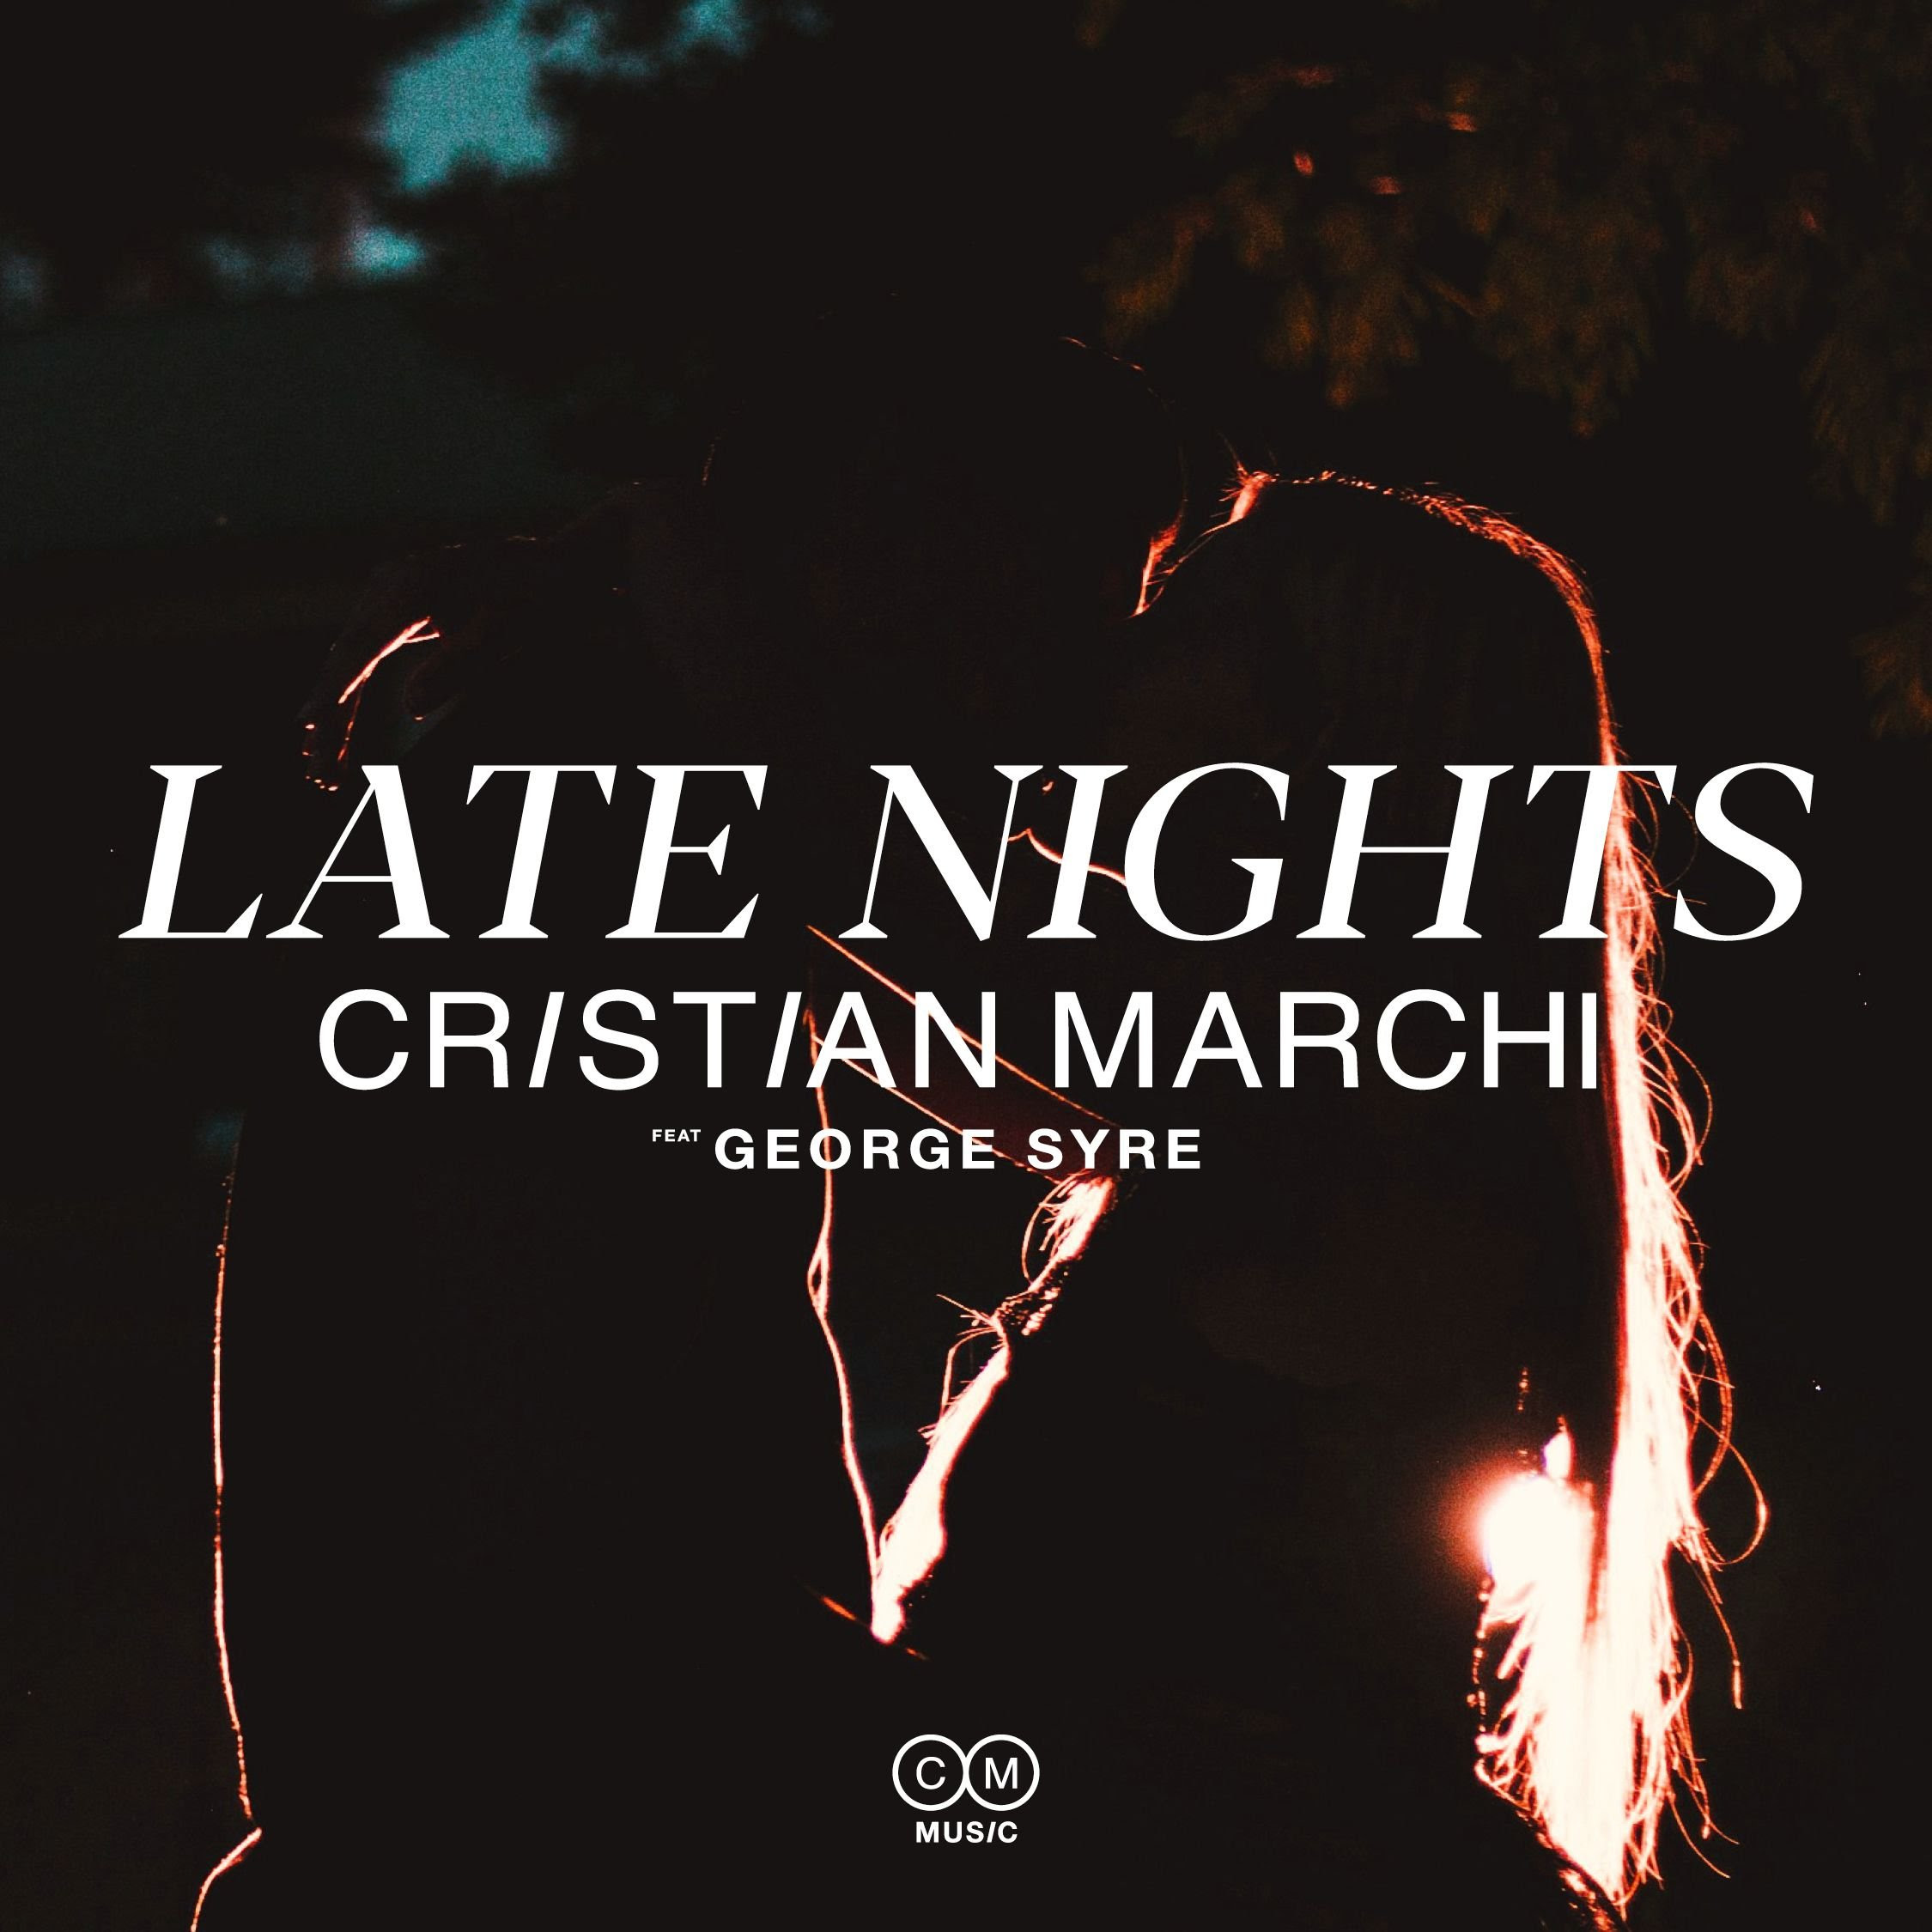 CRISTIAN MARCHI: da venerdì 21 giugno disponibile in digitale e in radio il nuovo singolo “LATE NIGHTS” feat. GEORGE SYRE